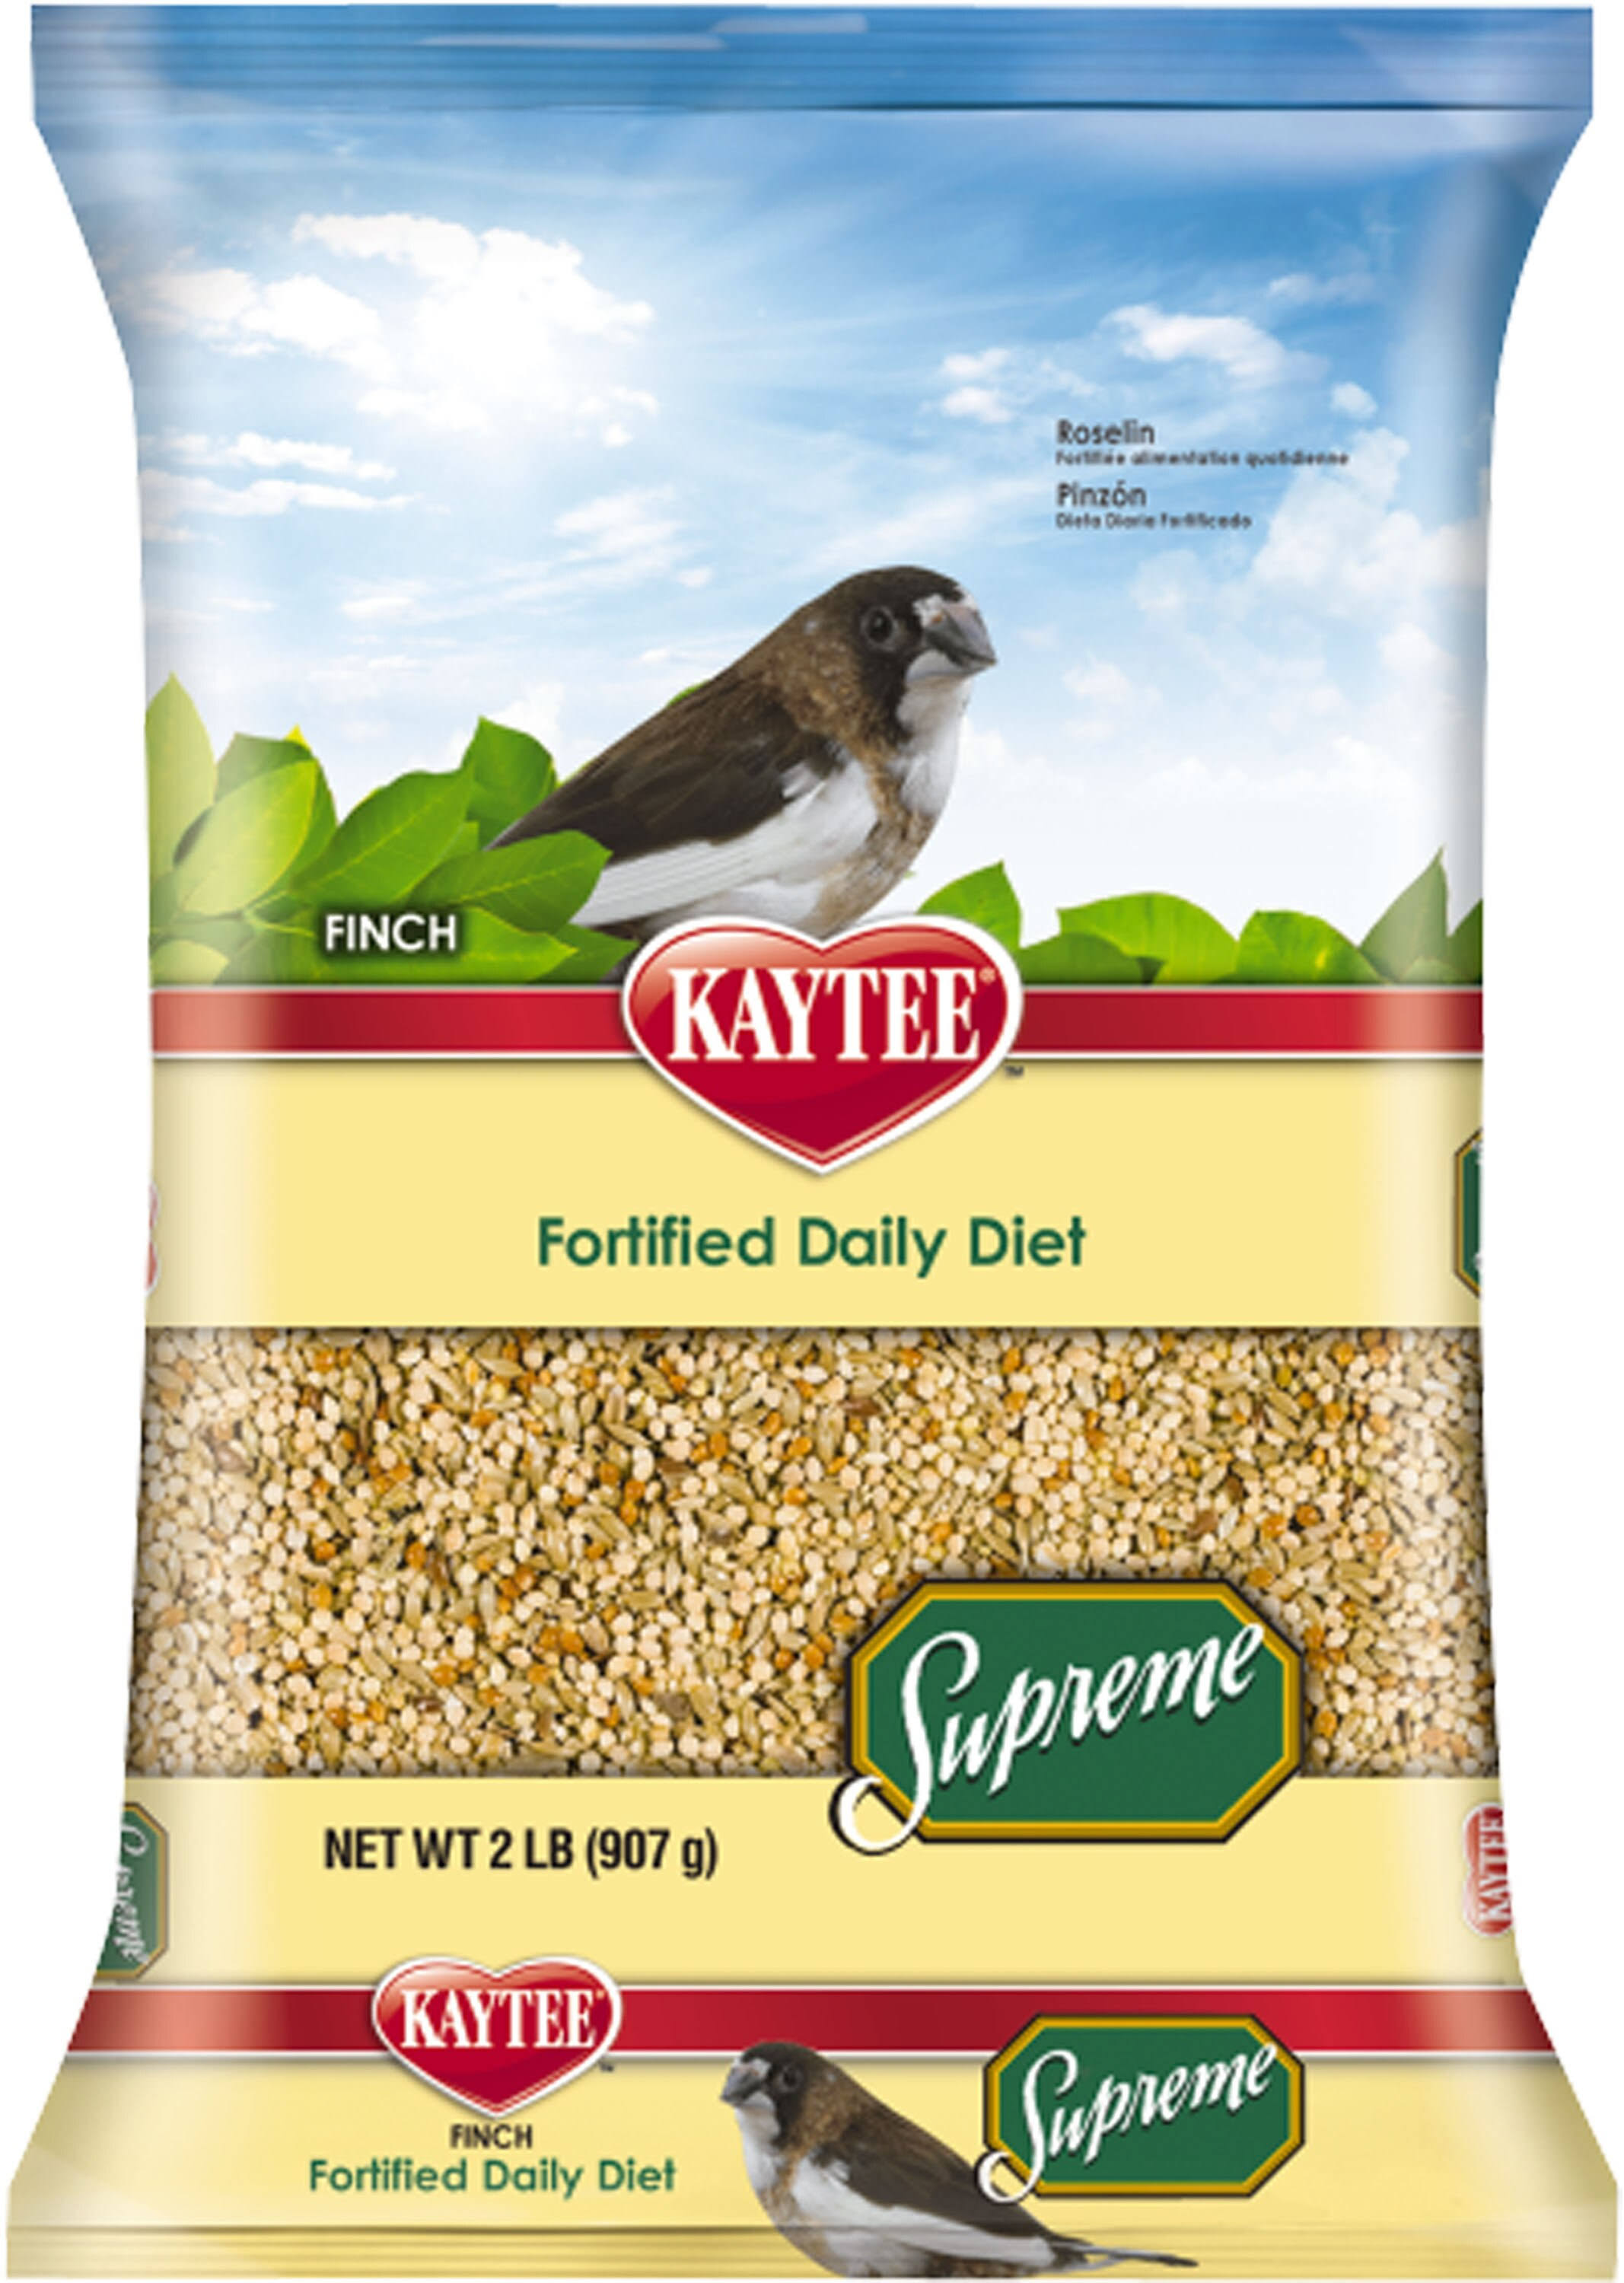 Kaytee Supreme Bird Food - Finches, 2lb